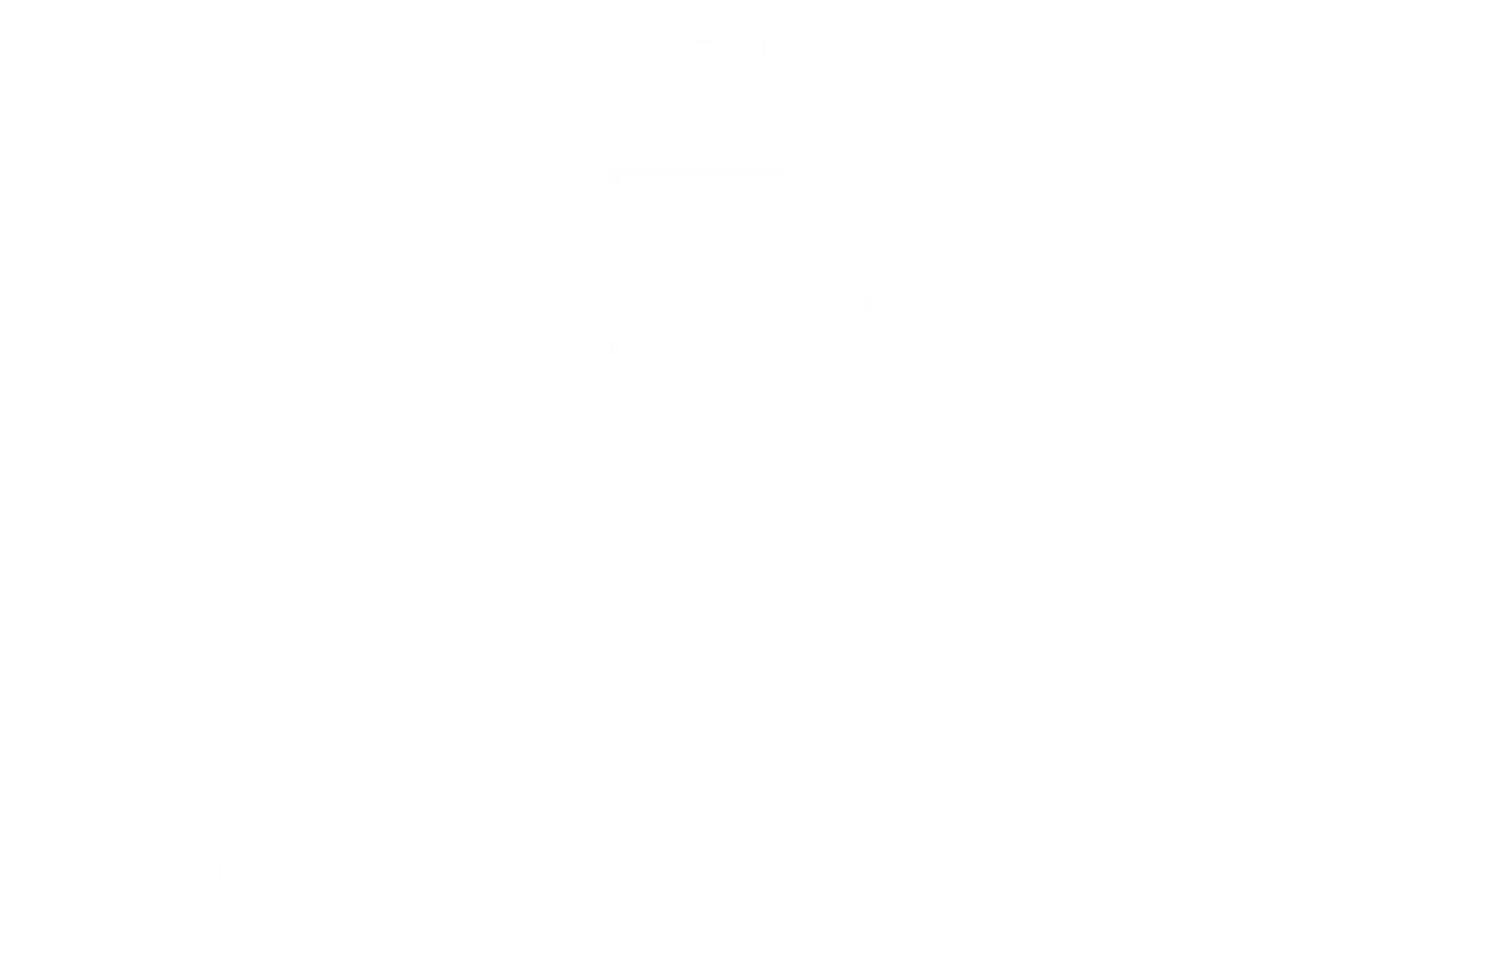 Brera Milano